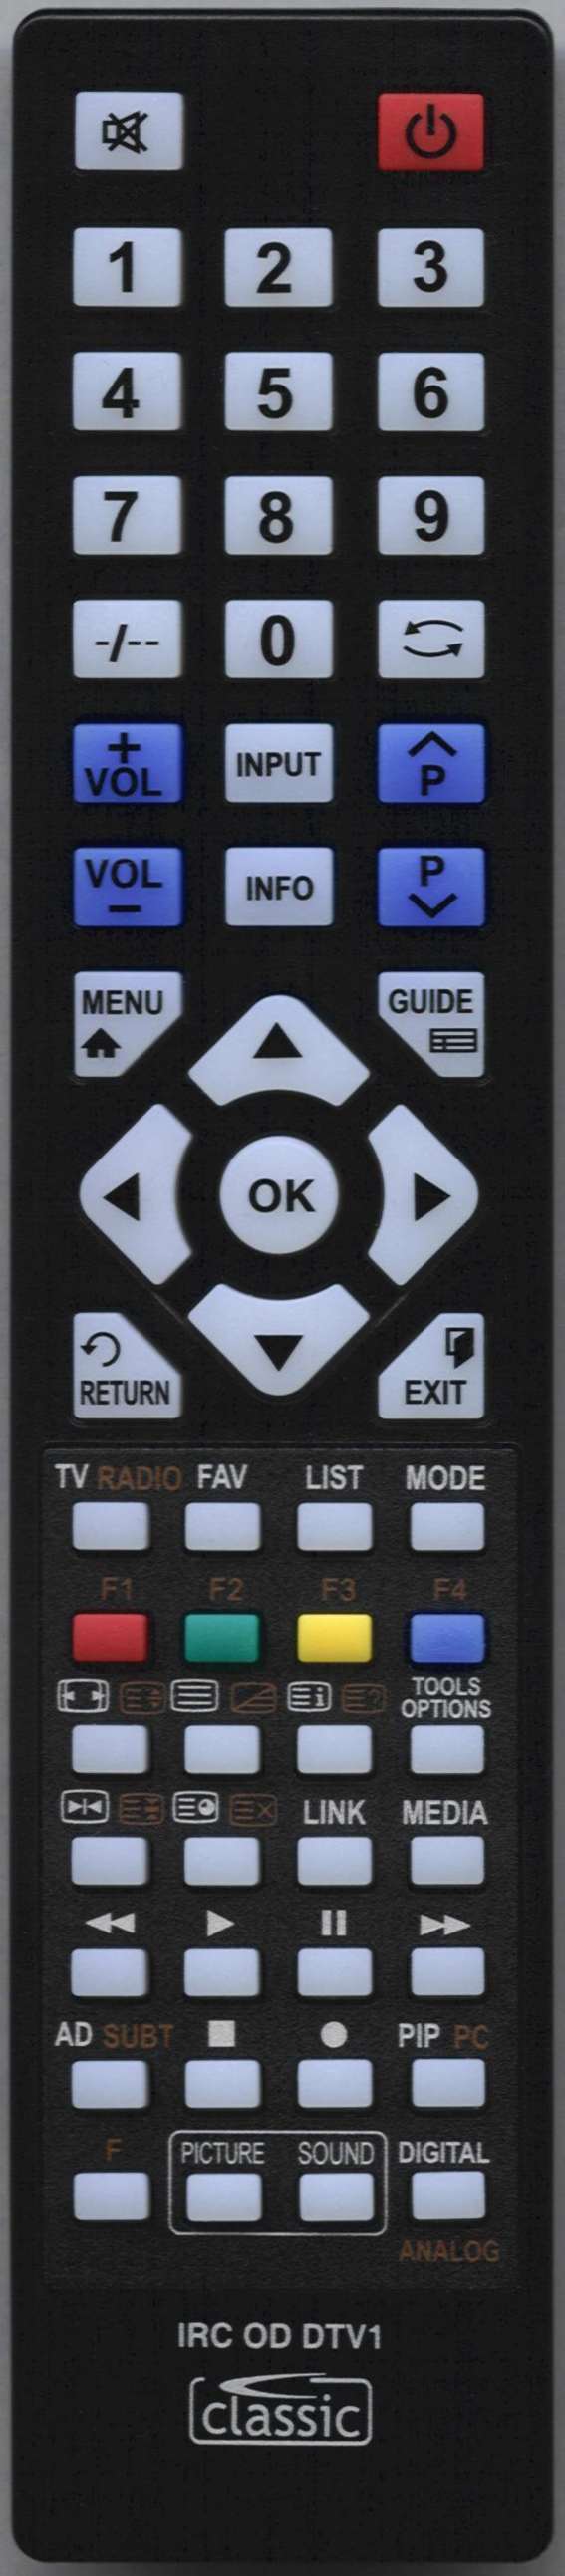 LUXOR LUX0155003/01 Remote Control Alternative